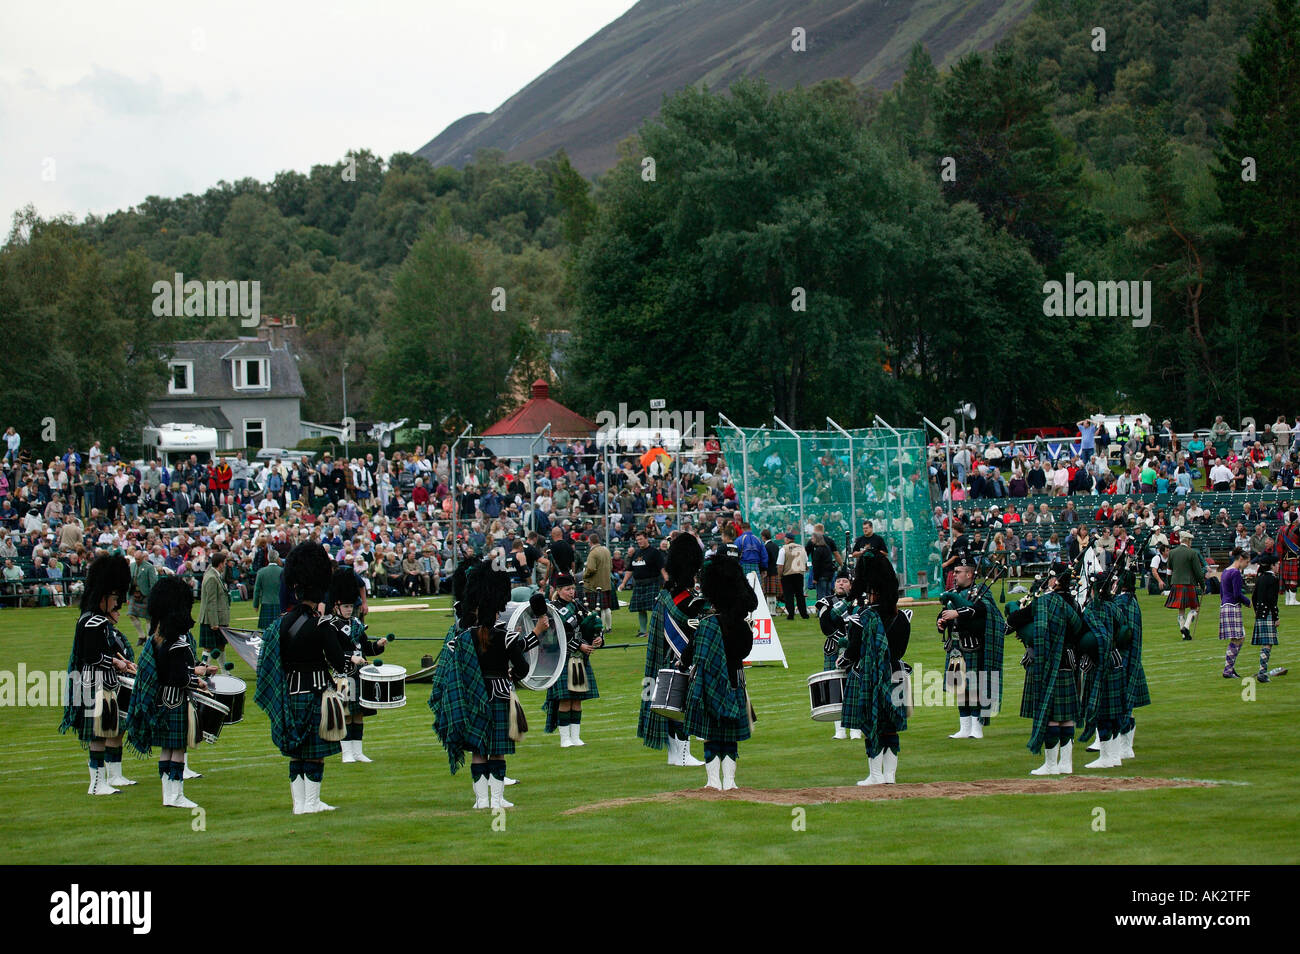 Collecte de Braemar Highland Games cornemuses défilent avec en arrière-plan de l'auditoire Banque D'Images